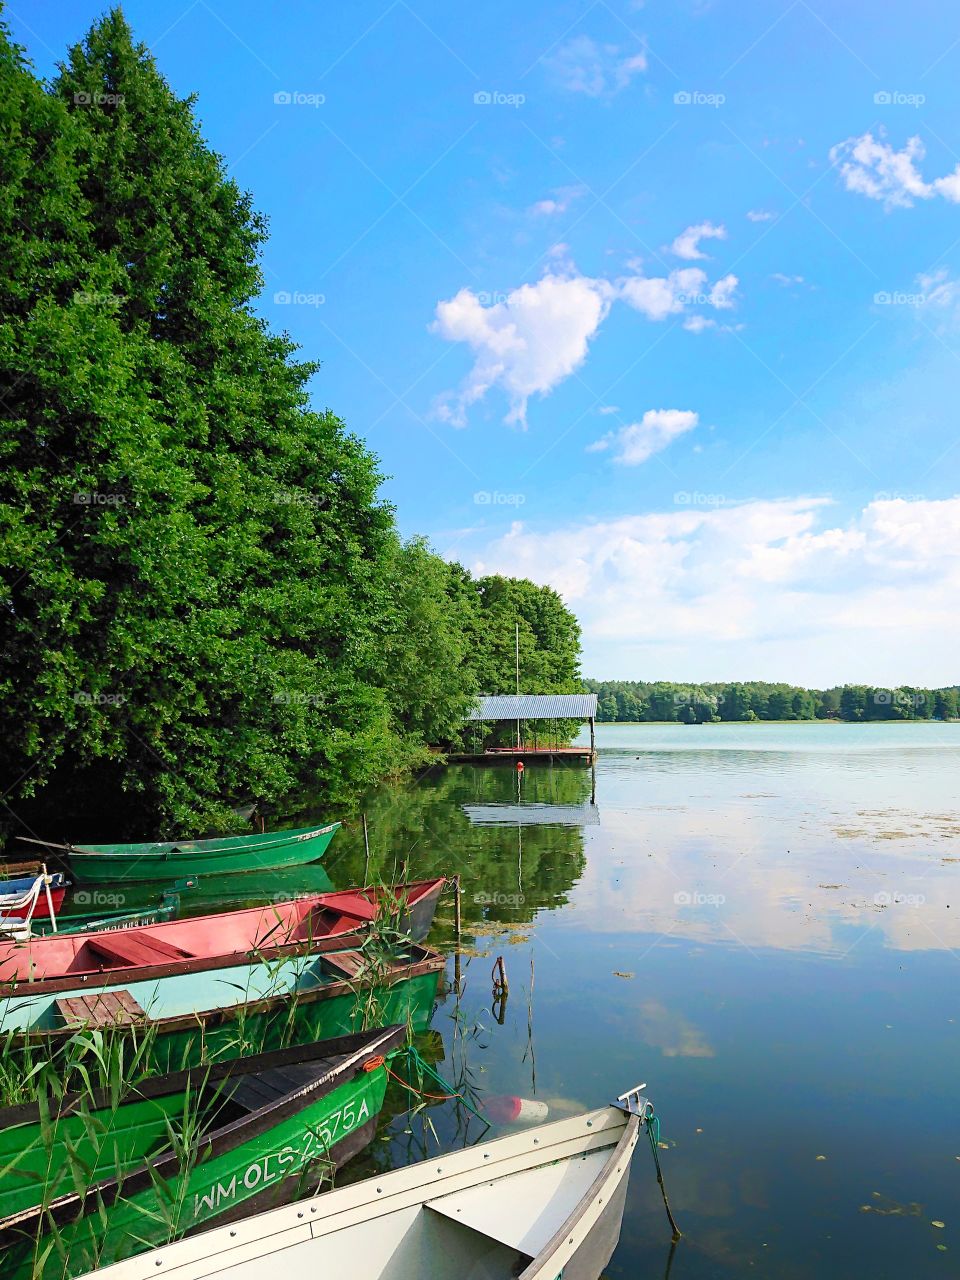 Ukiel Lake, Olsztyn - Poland